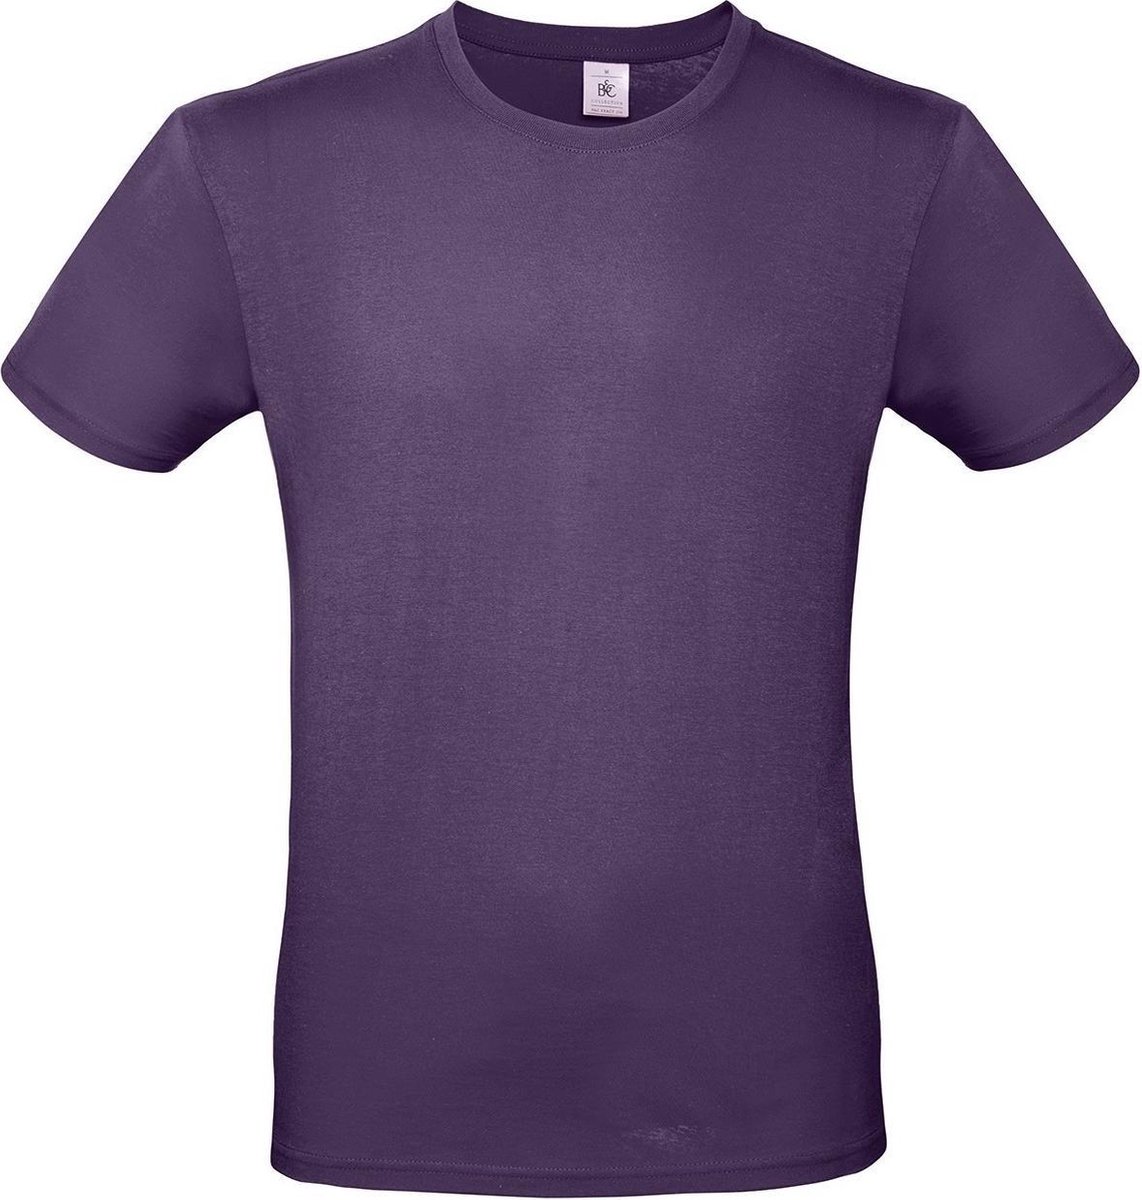 Set van 3x stuks paars basic t-shirt met ronde hals voor heren - katoen - 145 grams - paarse shirts / kleding, maat: M (50)